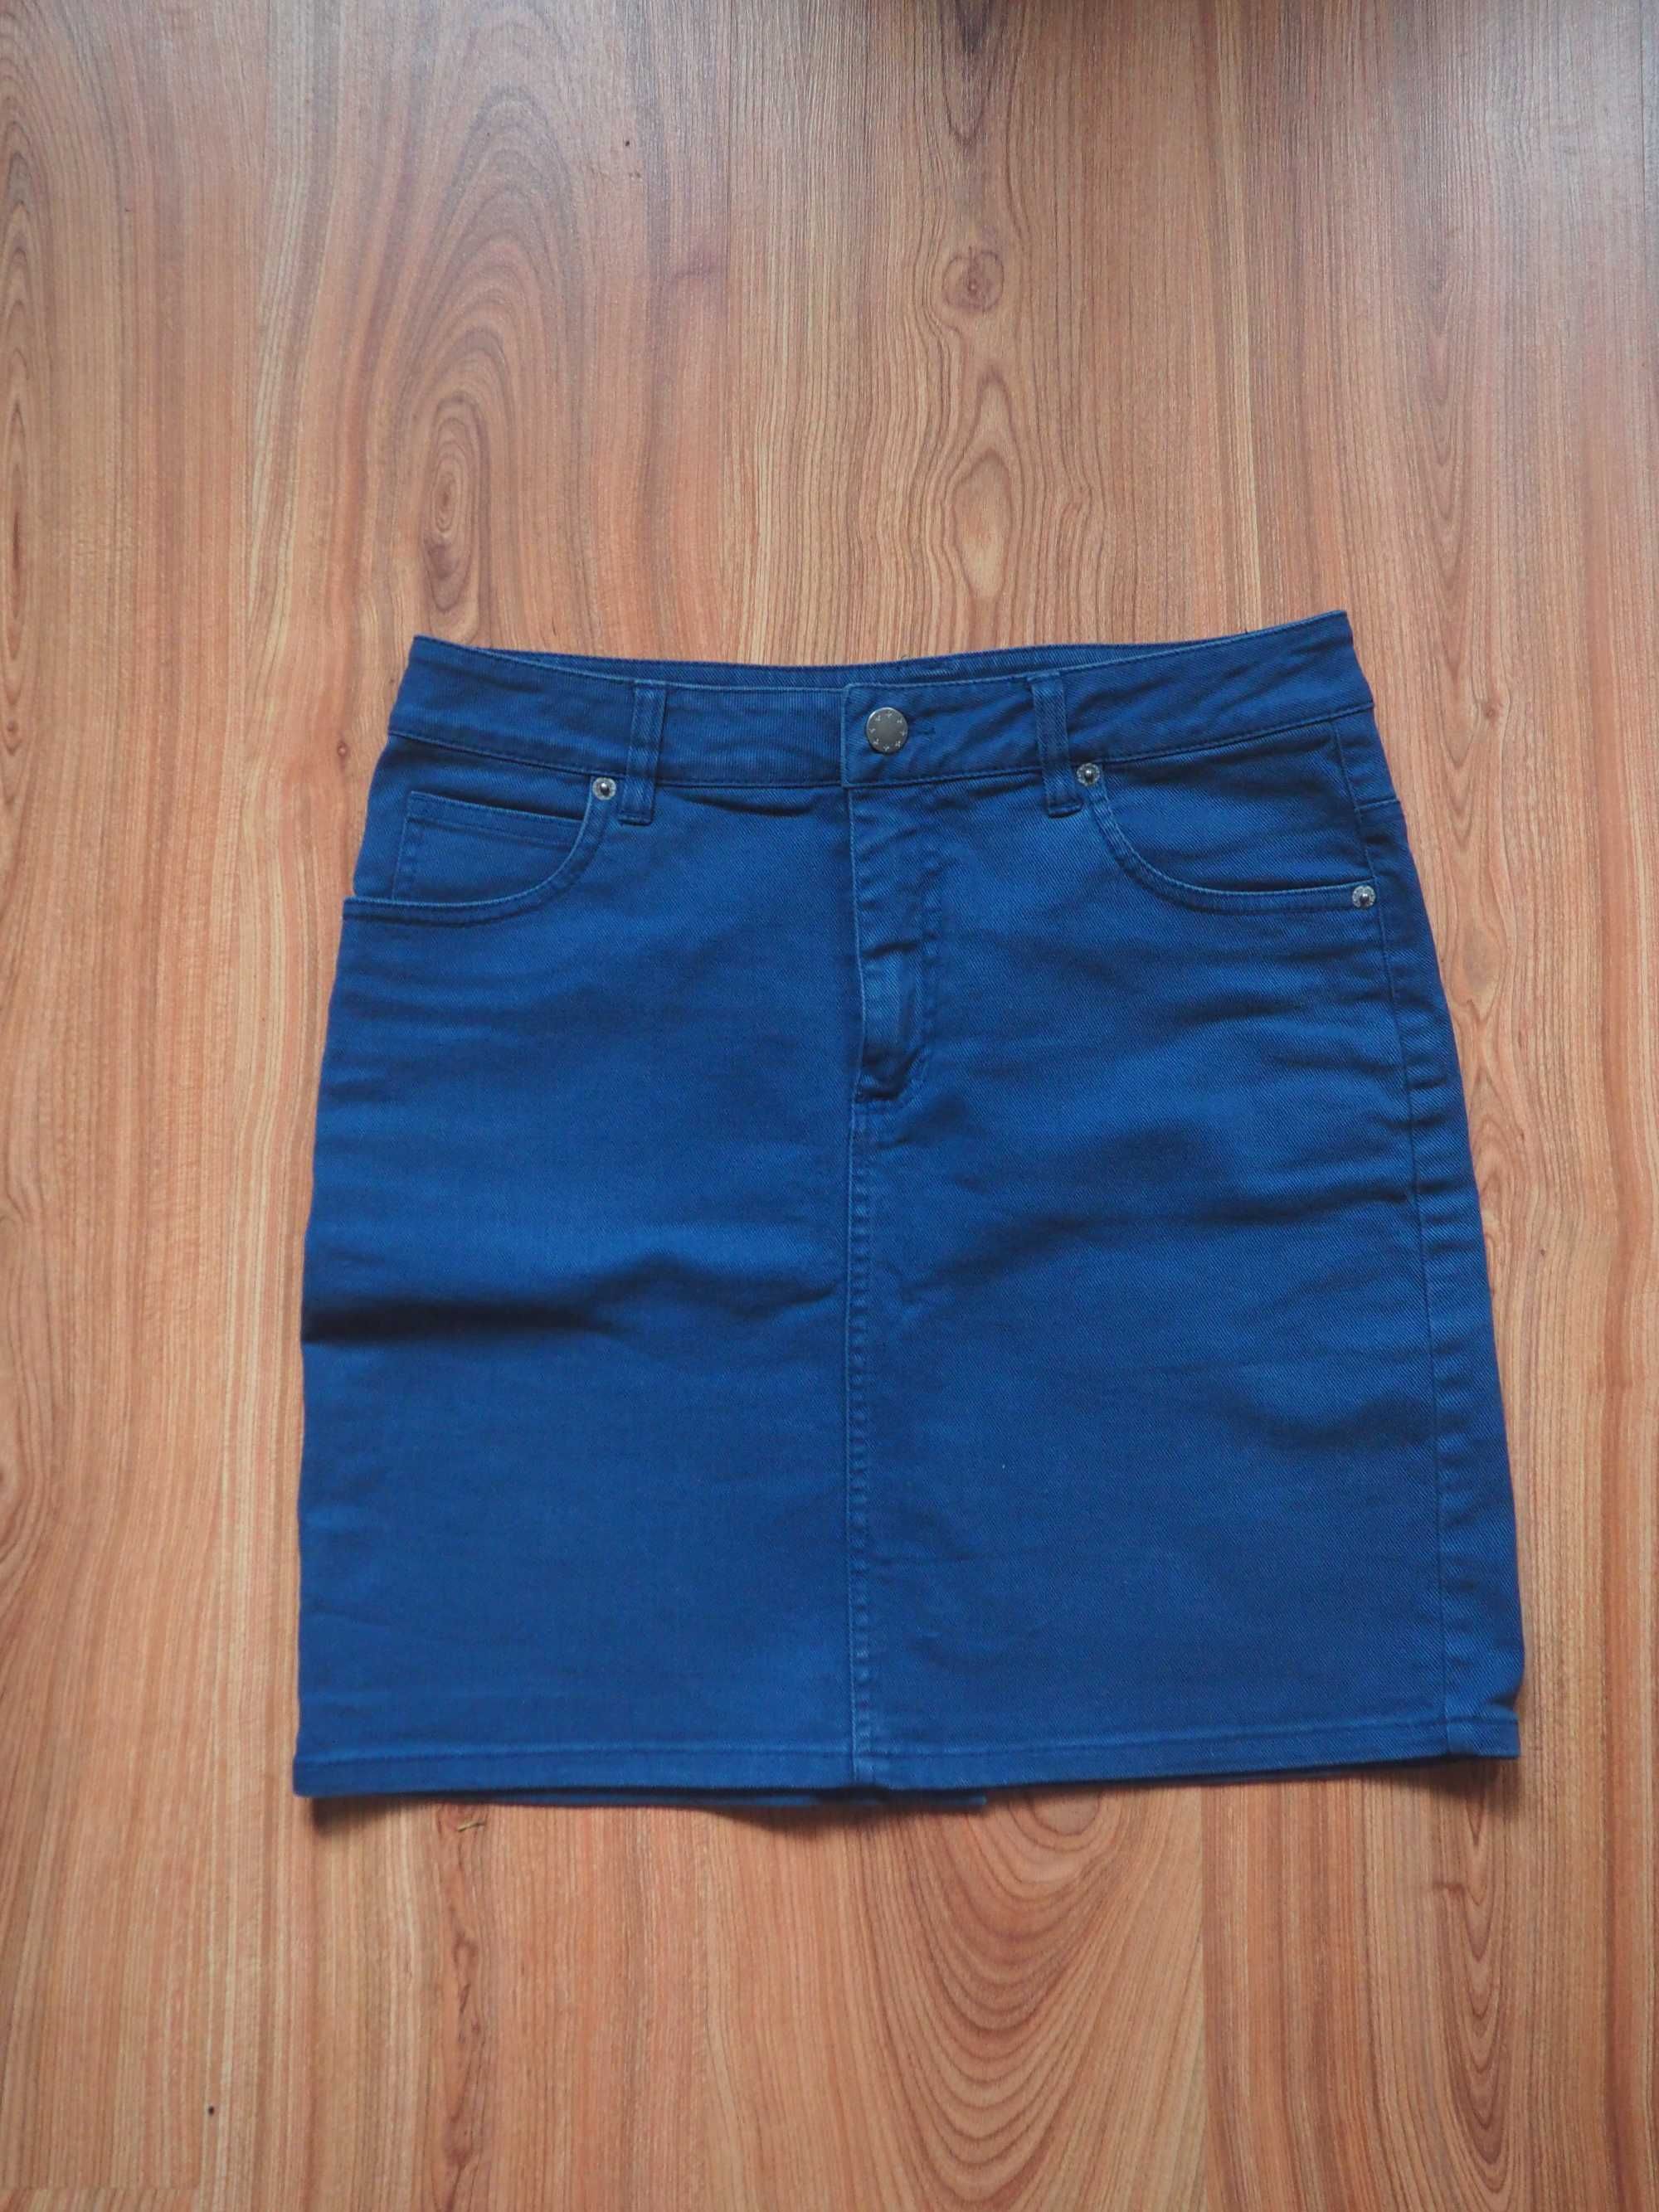 Spódnica att M L 40 jeans niebieska mini